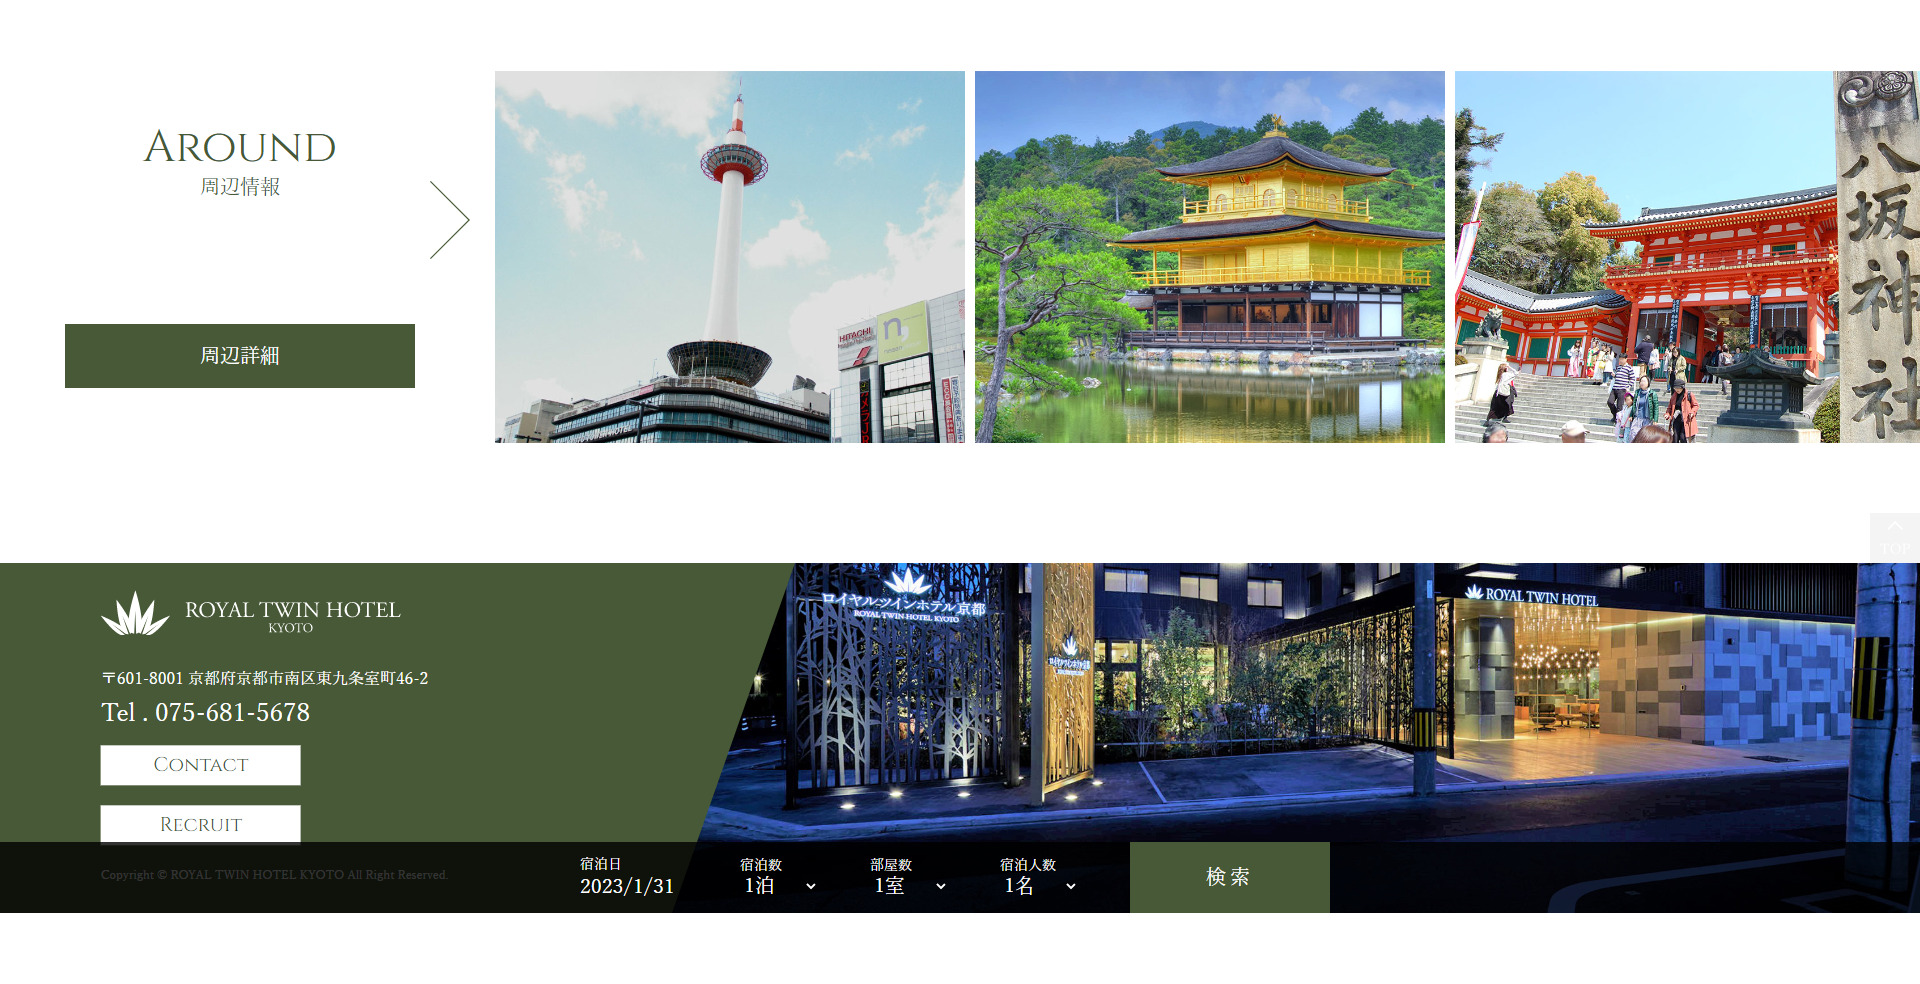 ホテル内容だけではない、京都ならではの観光地の紹介を配置、フッターには予約状況を表示